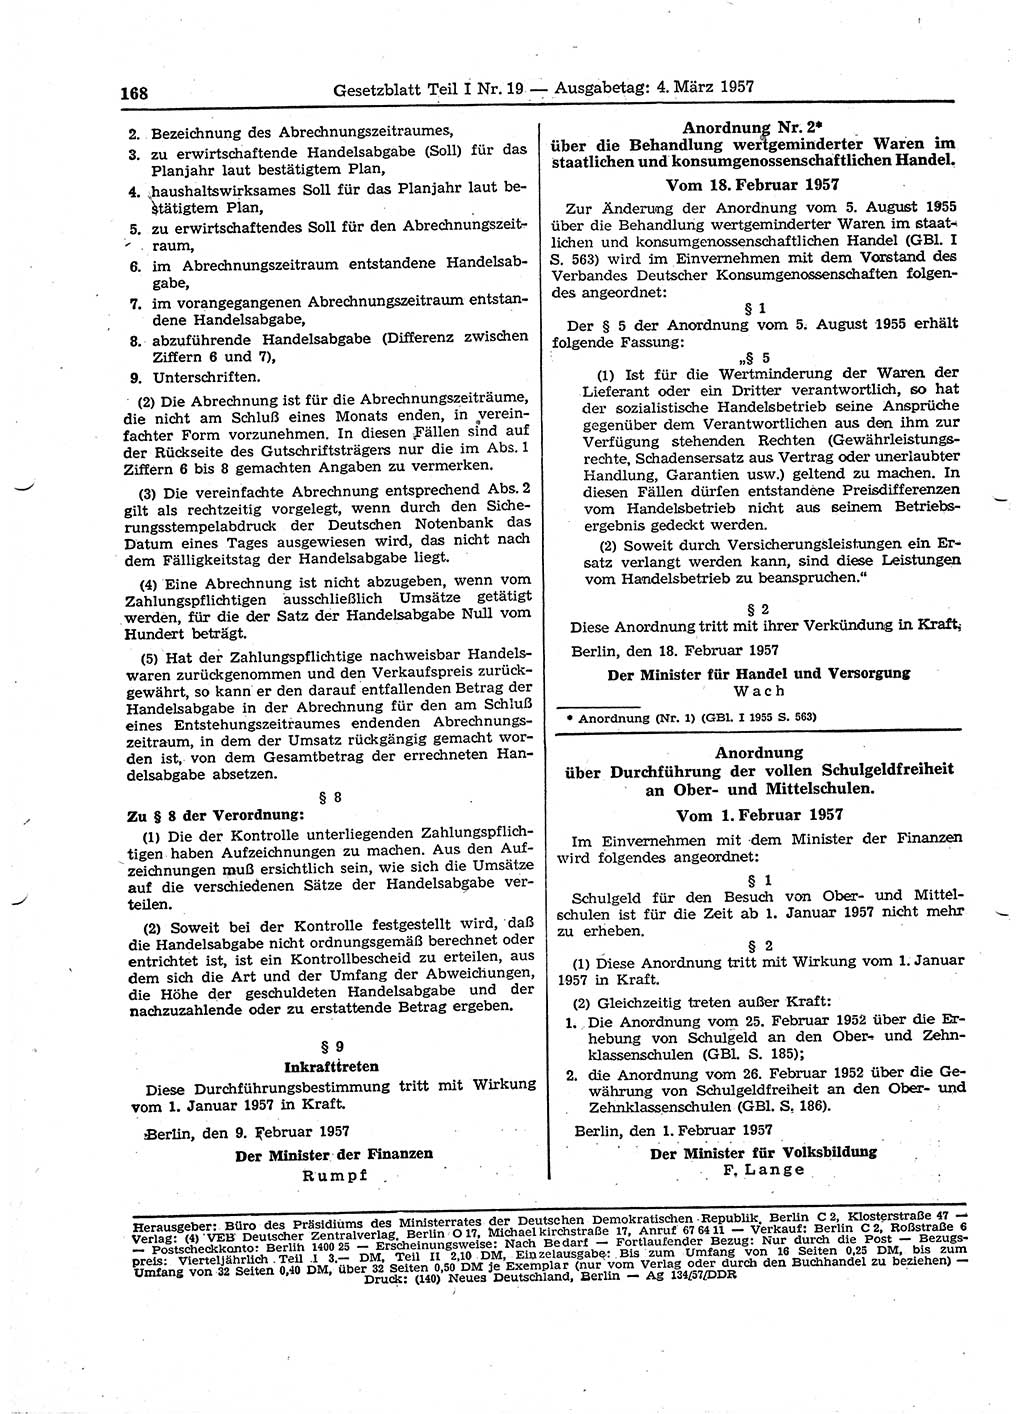 Gesetzblatt (GBl.) der Deutschen Demokratischen Republik (DDR) Teil Ⅰ 1957, Seite 168 (GBl. DDR Ⅰ 1957, S. 168)